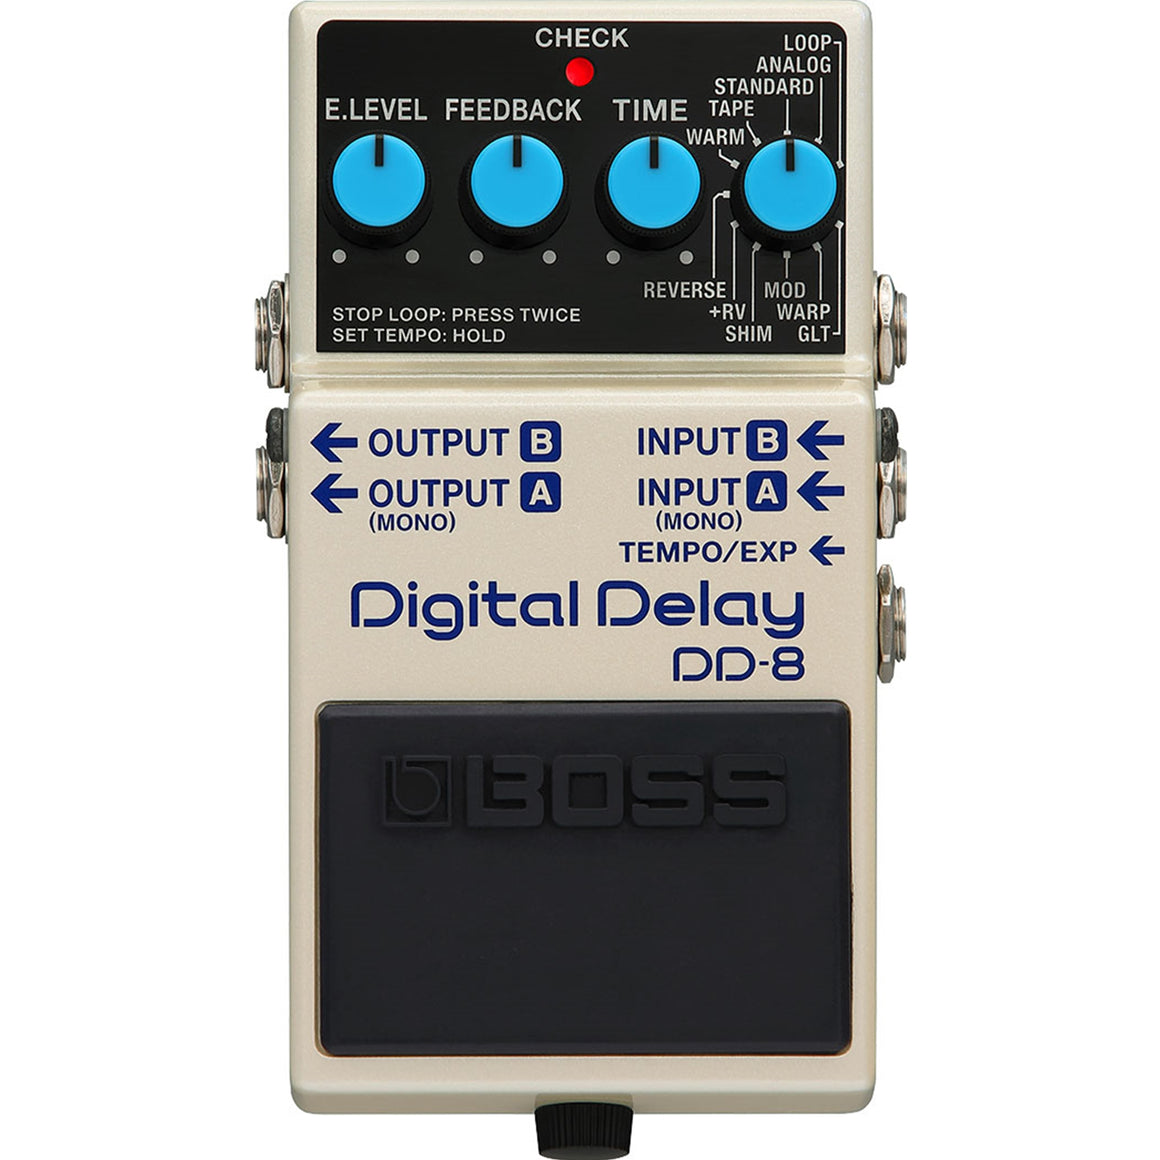 BOSS DD8 Digital Delay Effects Pedal